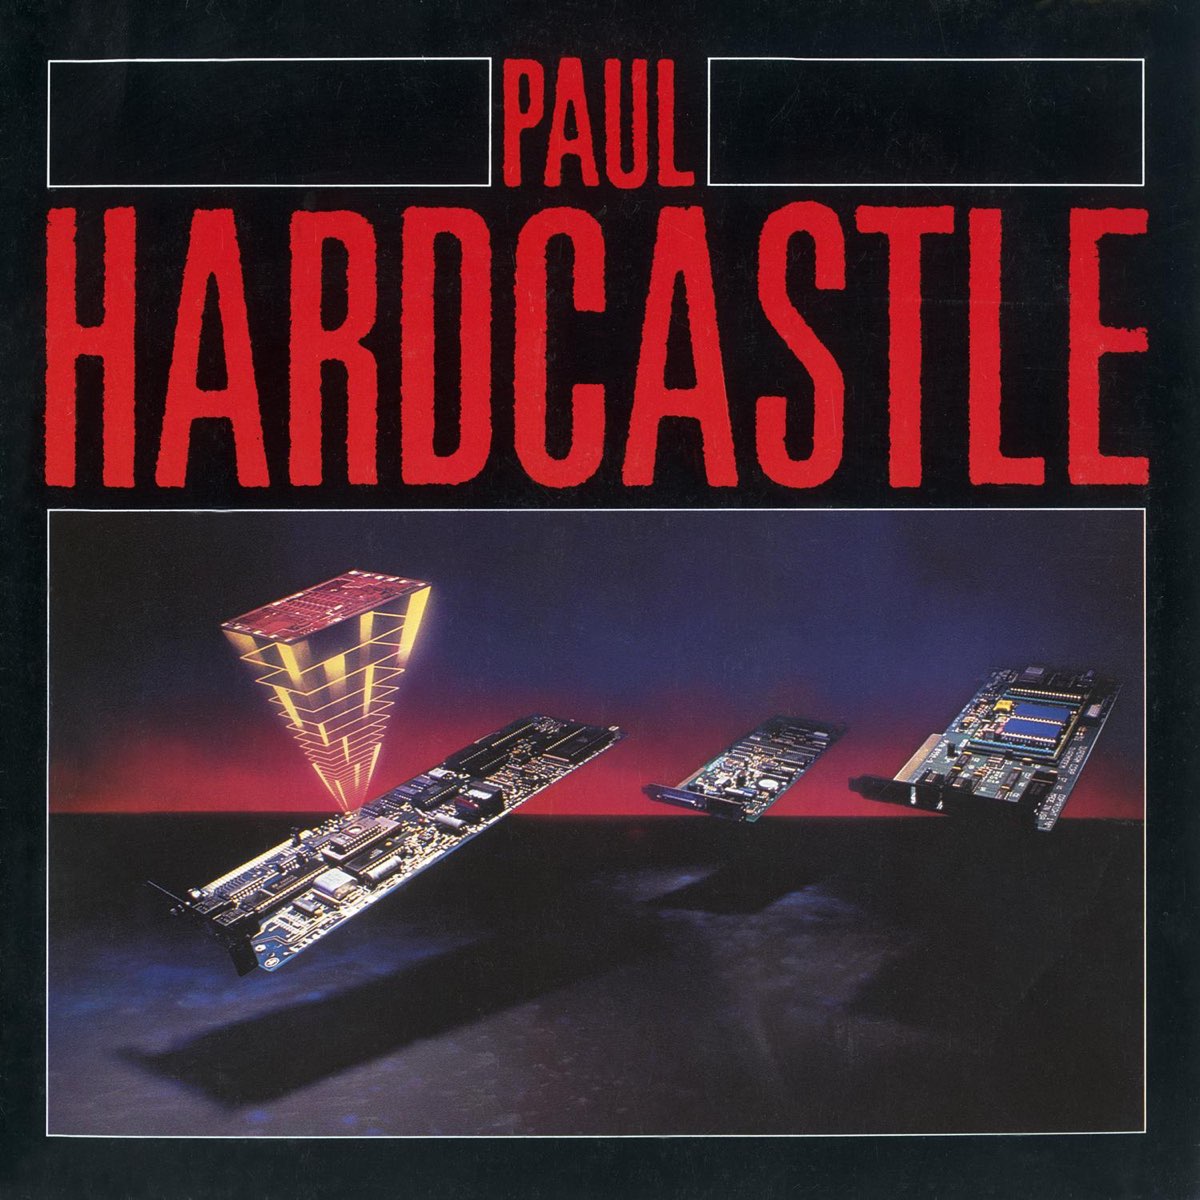 Paul hardcastle. Paul Hardcastle 1985. Paul Hardcastle - Hardcastle. Paul Hardcastle 19. Paul Hardcastle фото альбомов.